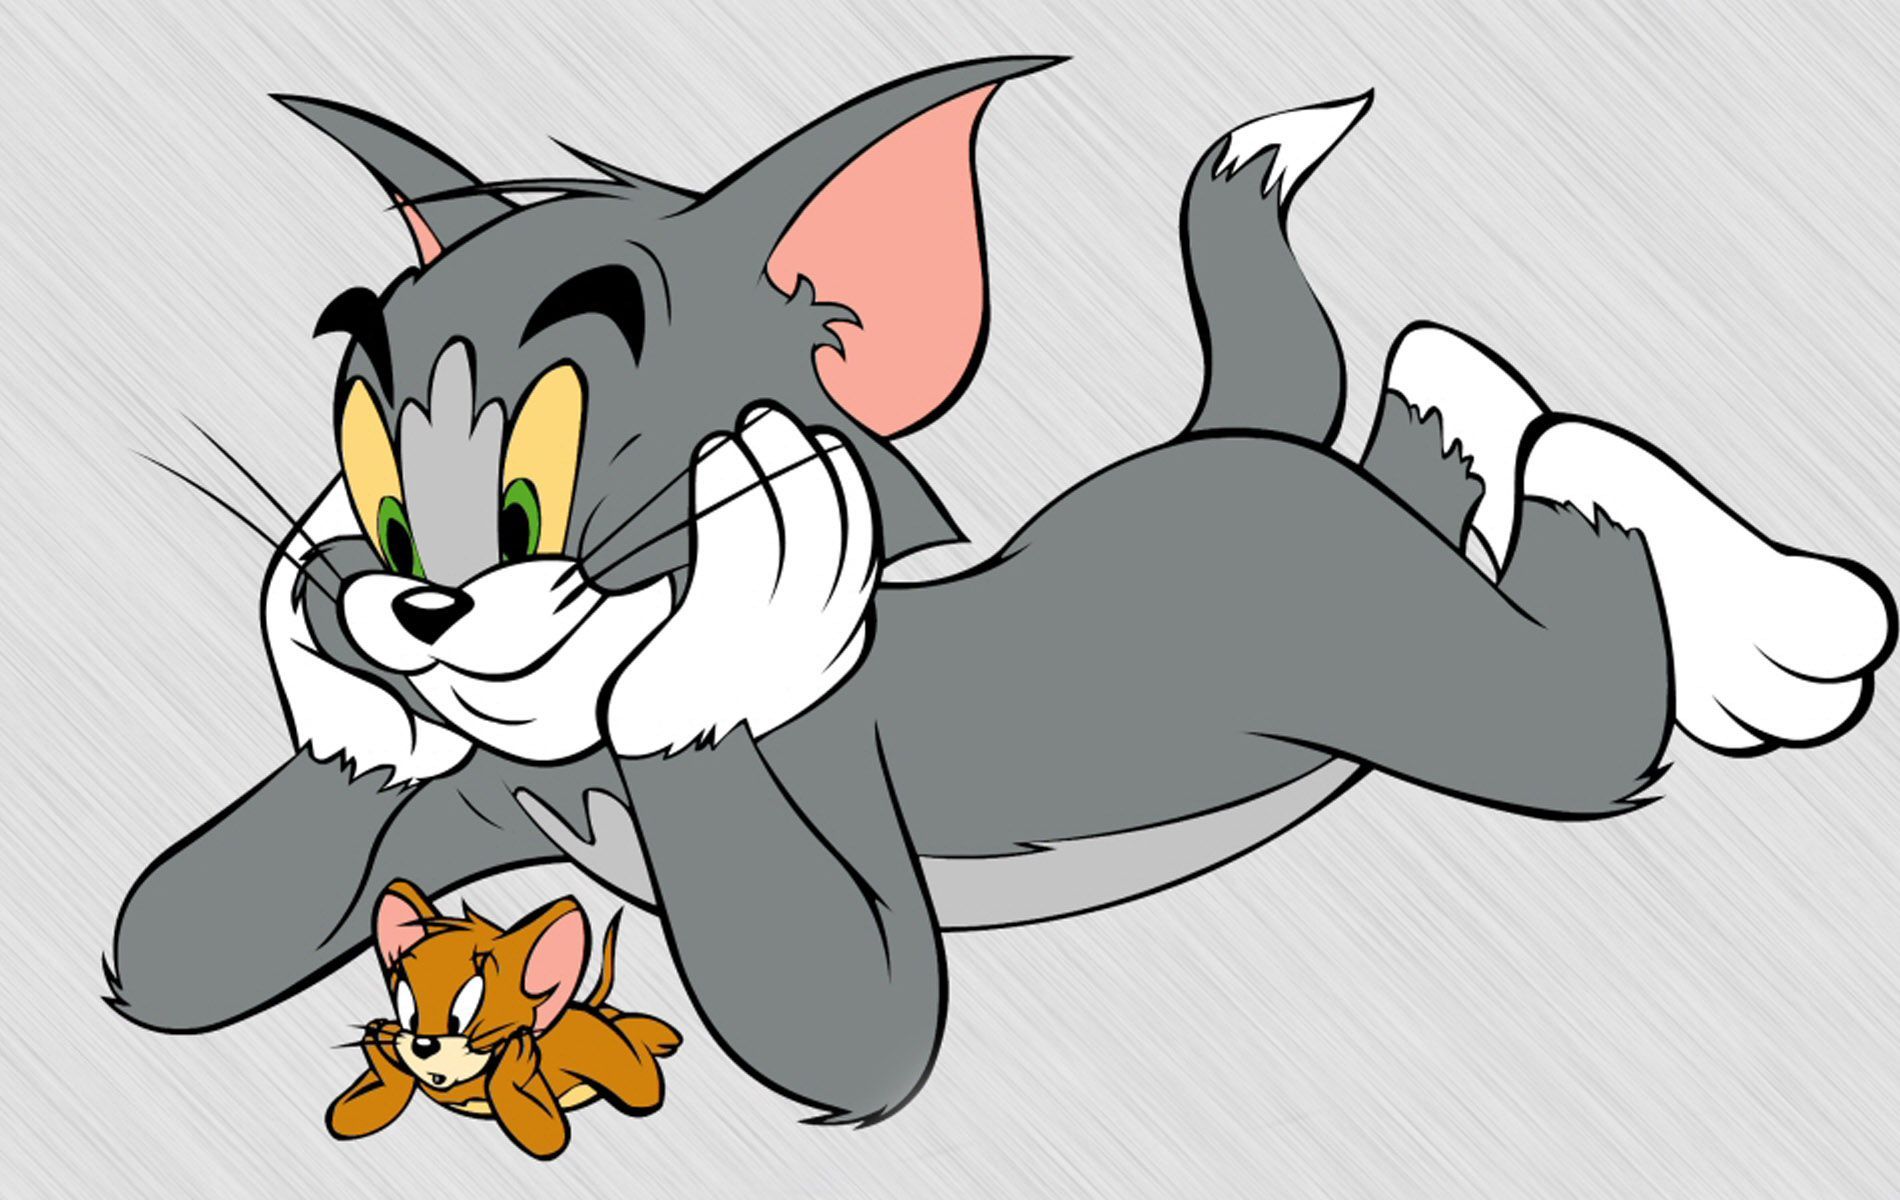 تردد قناة توم وجيري الجديد 2019 على القمر الصناعي النايل سات || كرتون Tom and Jerry الجديد